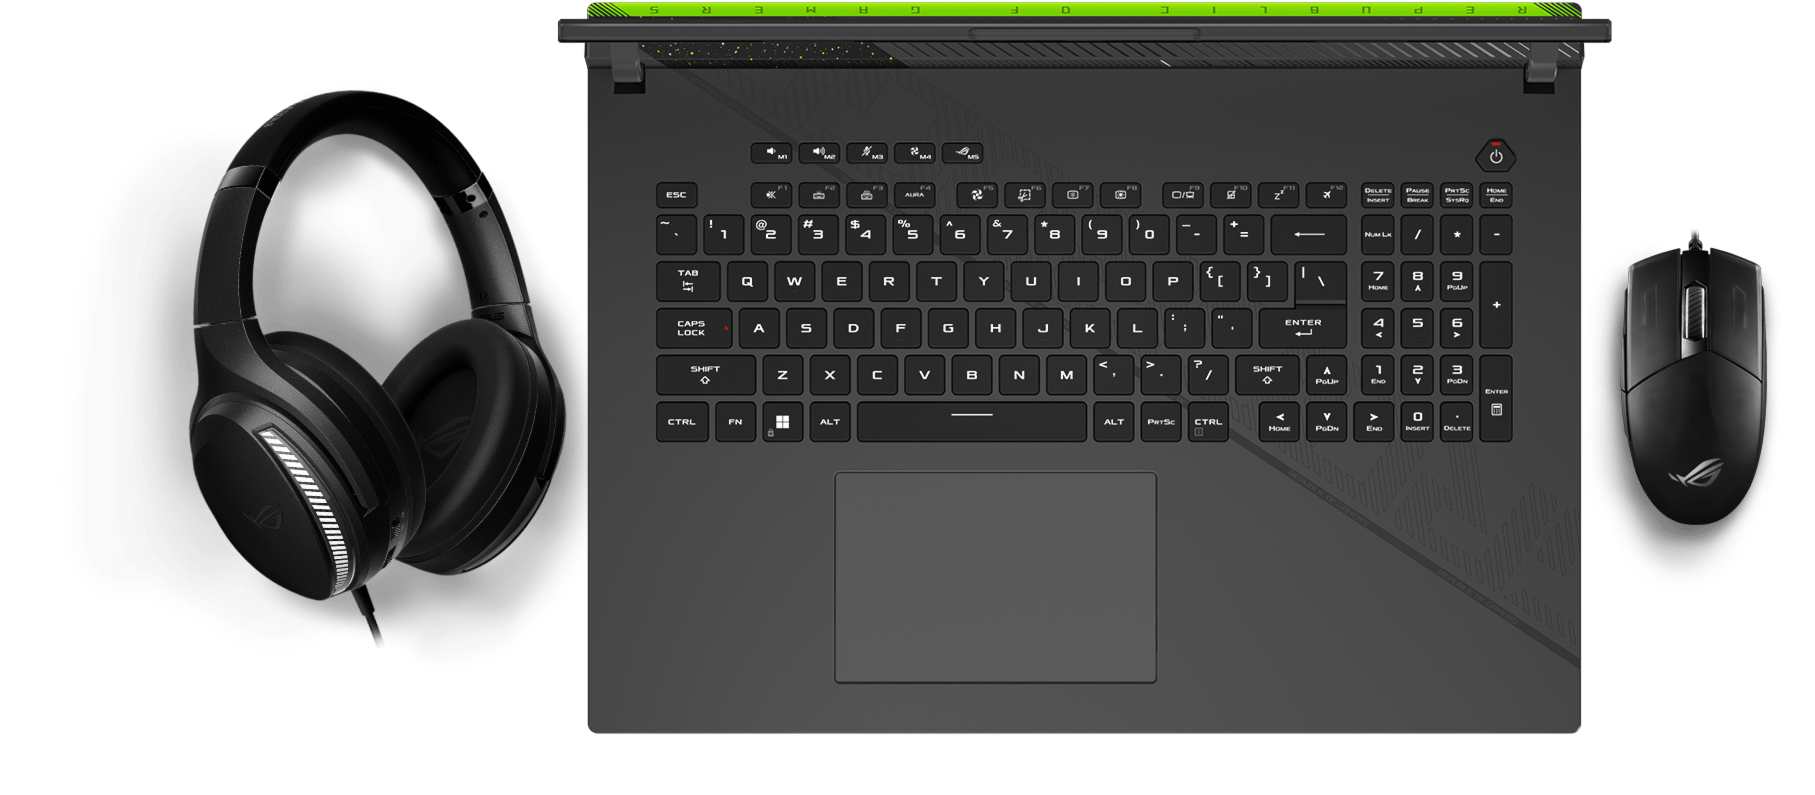 Pohľad na klávesnicu so svetelnými efektmi Aura synchronizovanými s myšou a headsetom.